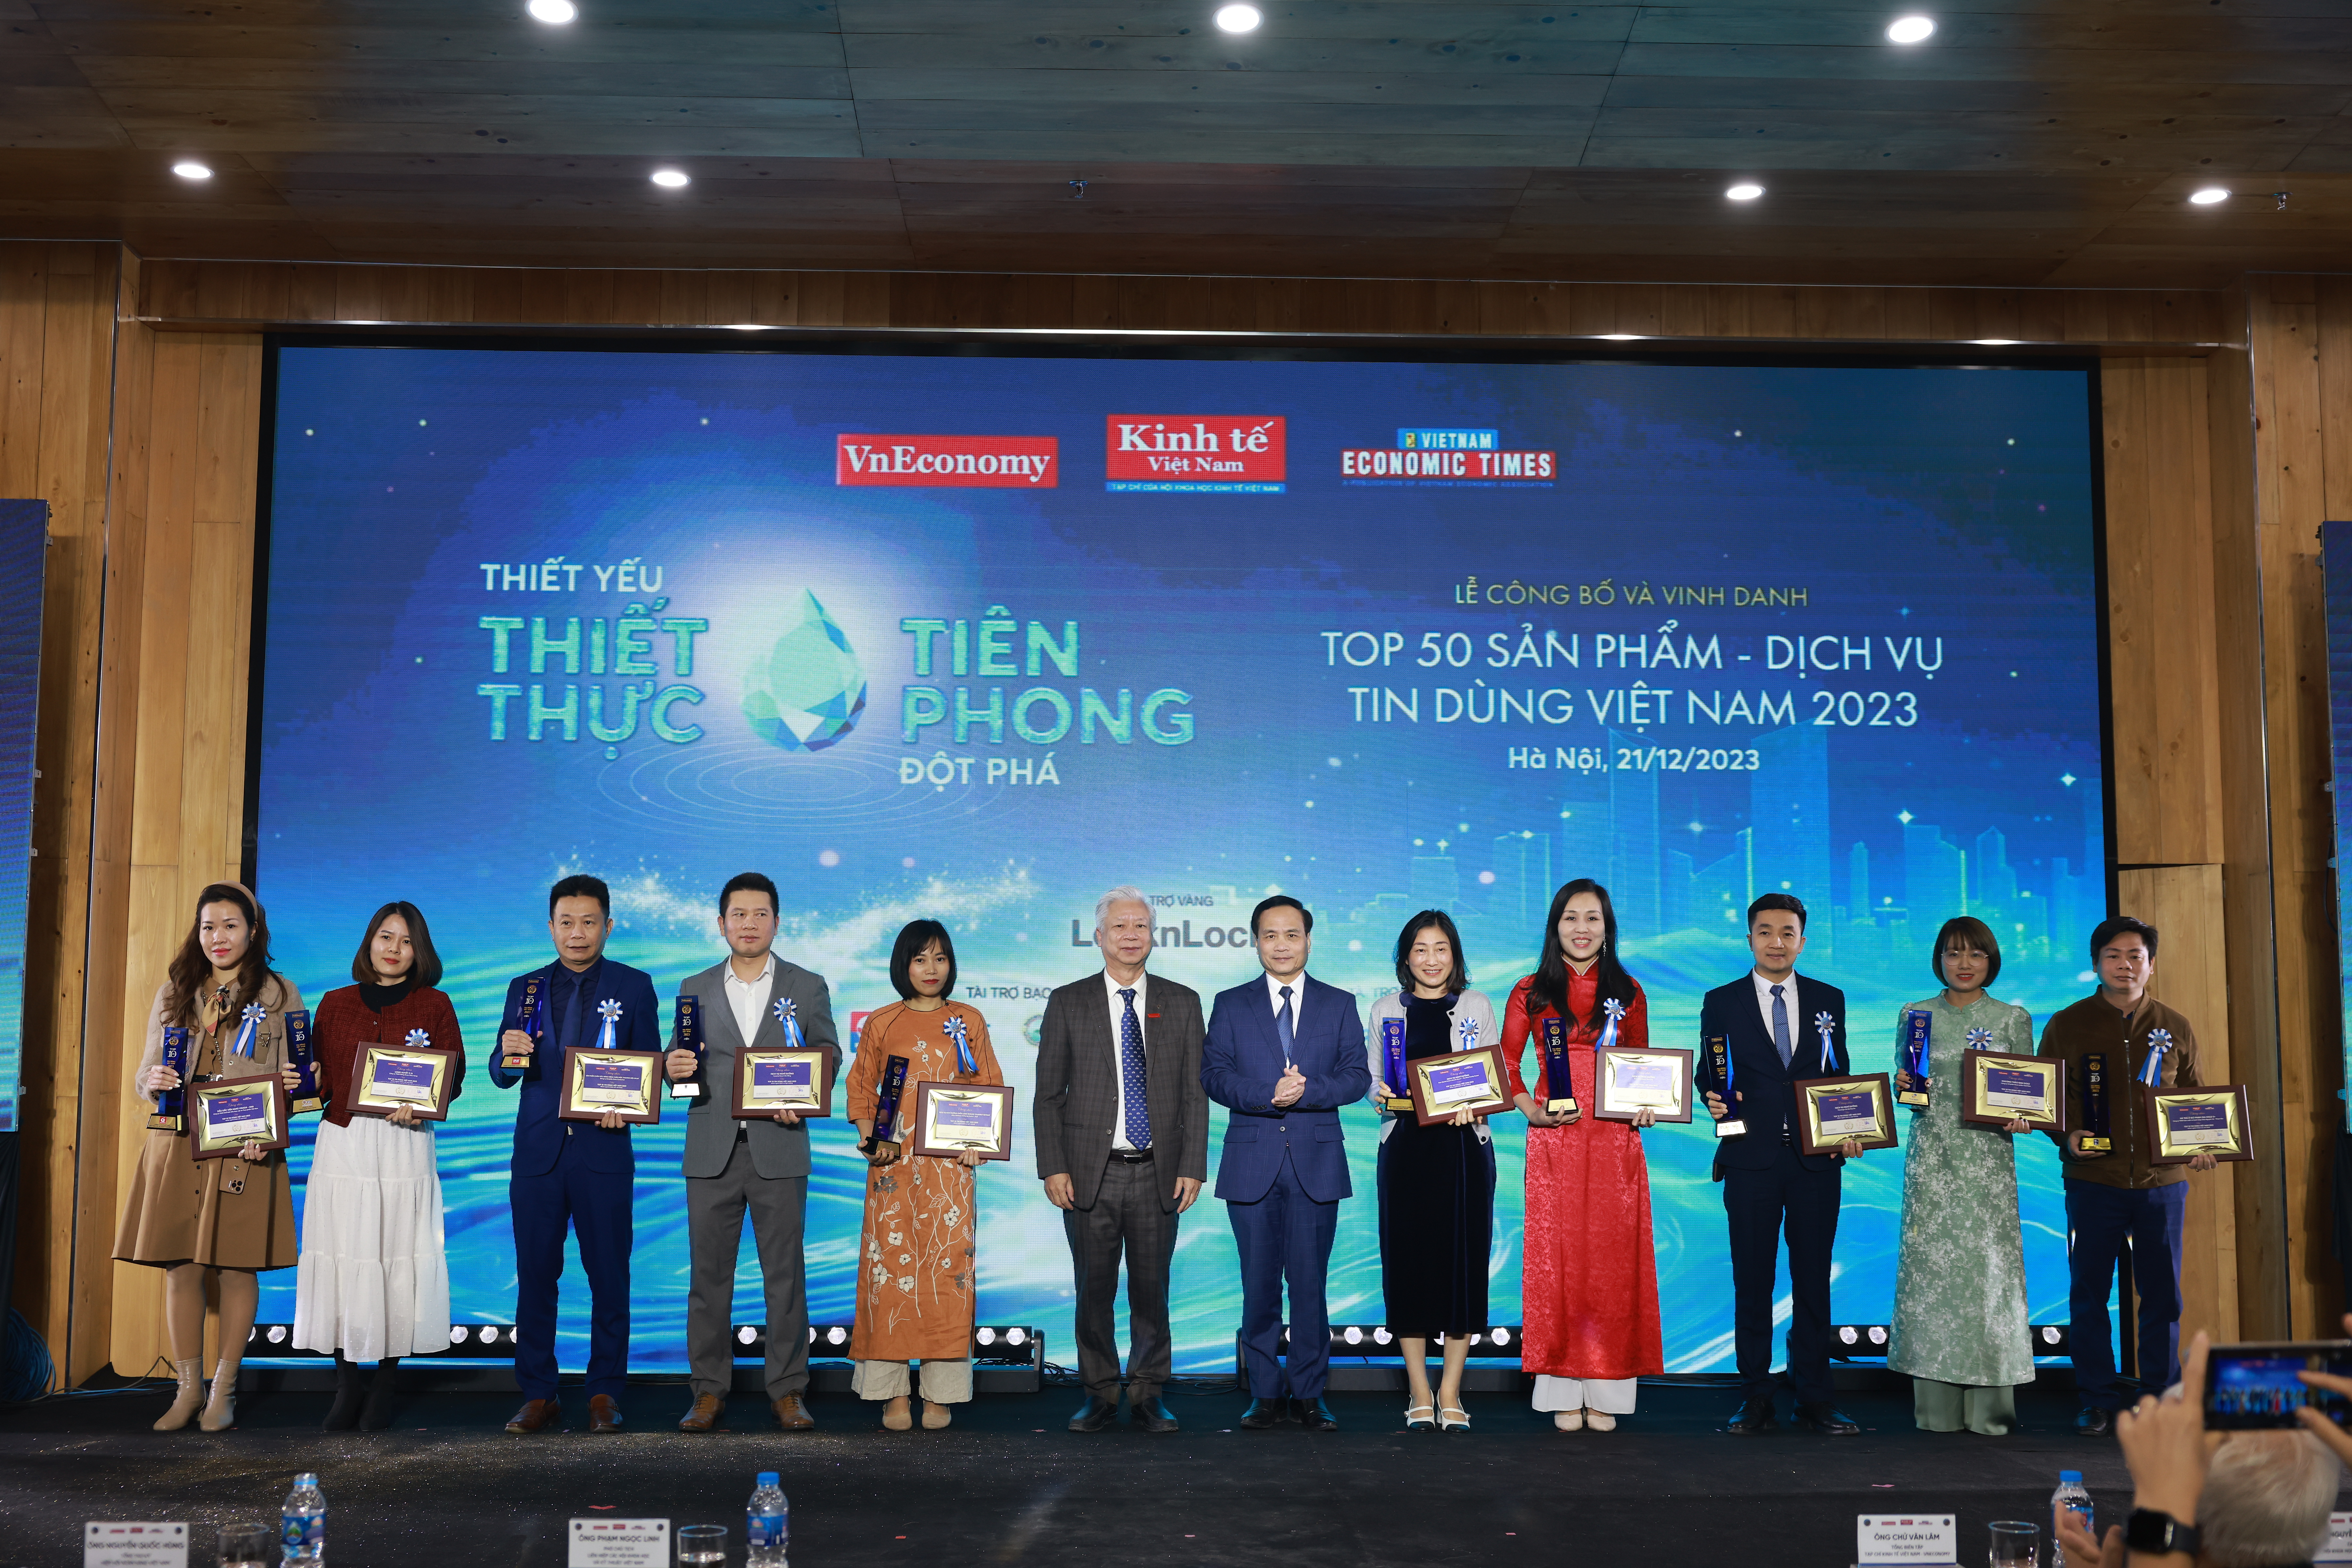 Vinh danh Top 50 Sản phẩm - Dịch vụ Tin Dùng Việt Nam 2023  - Ảnh 1